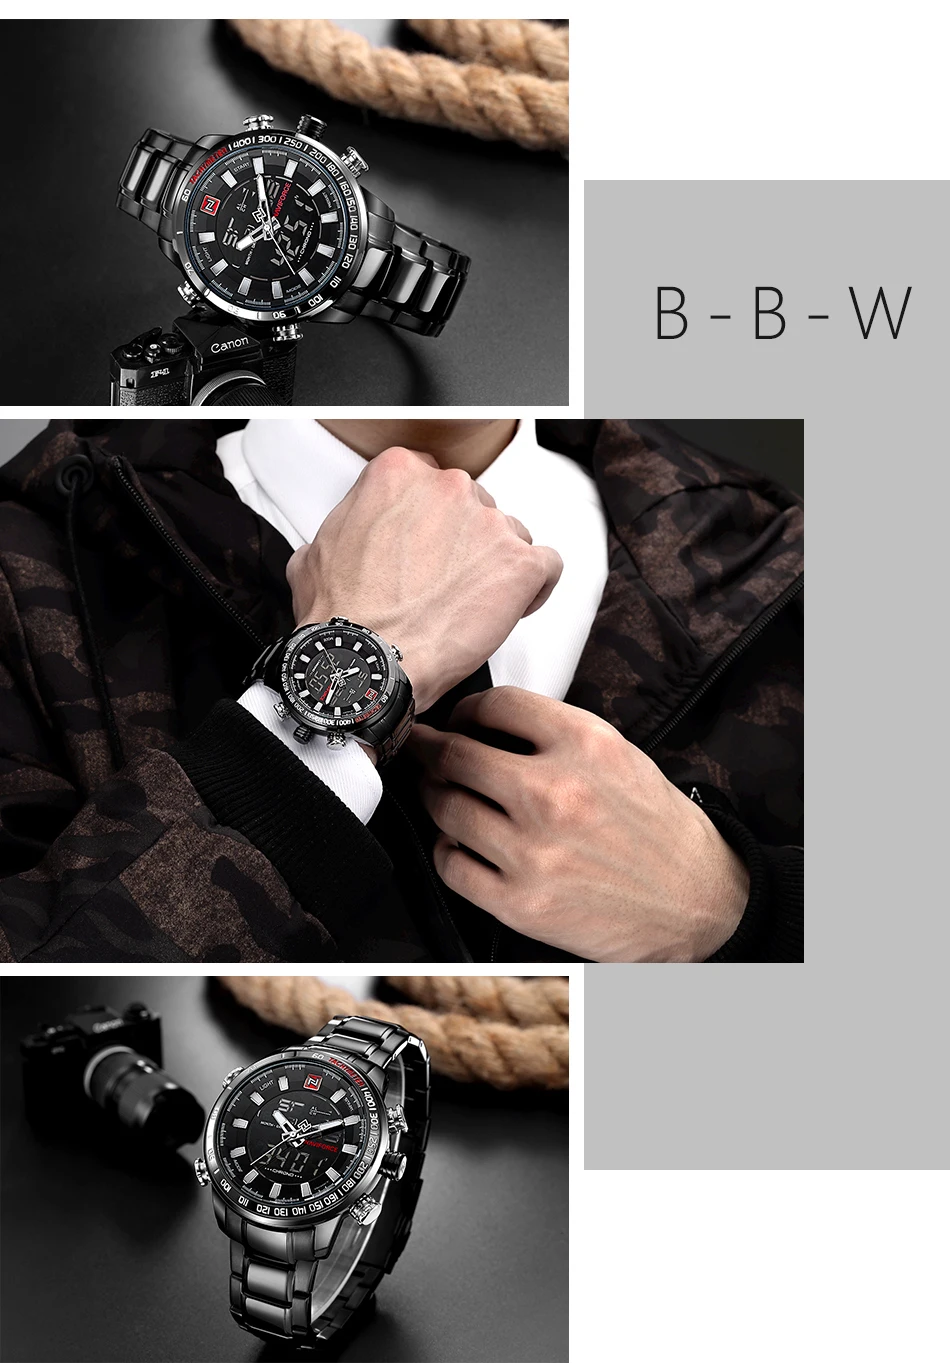 NAVIFORCE новый роскошный для мужчин's Chrono спортивные часы бренд Военная Униформа водостойкий EL подсветка цифровые наручные часы для